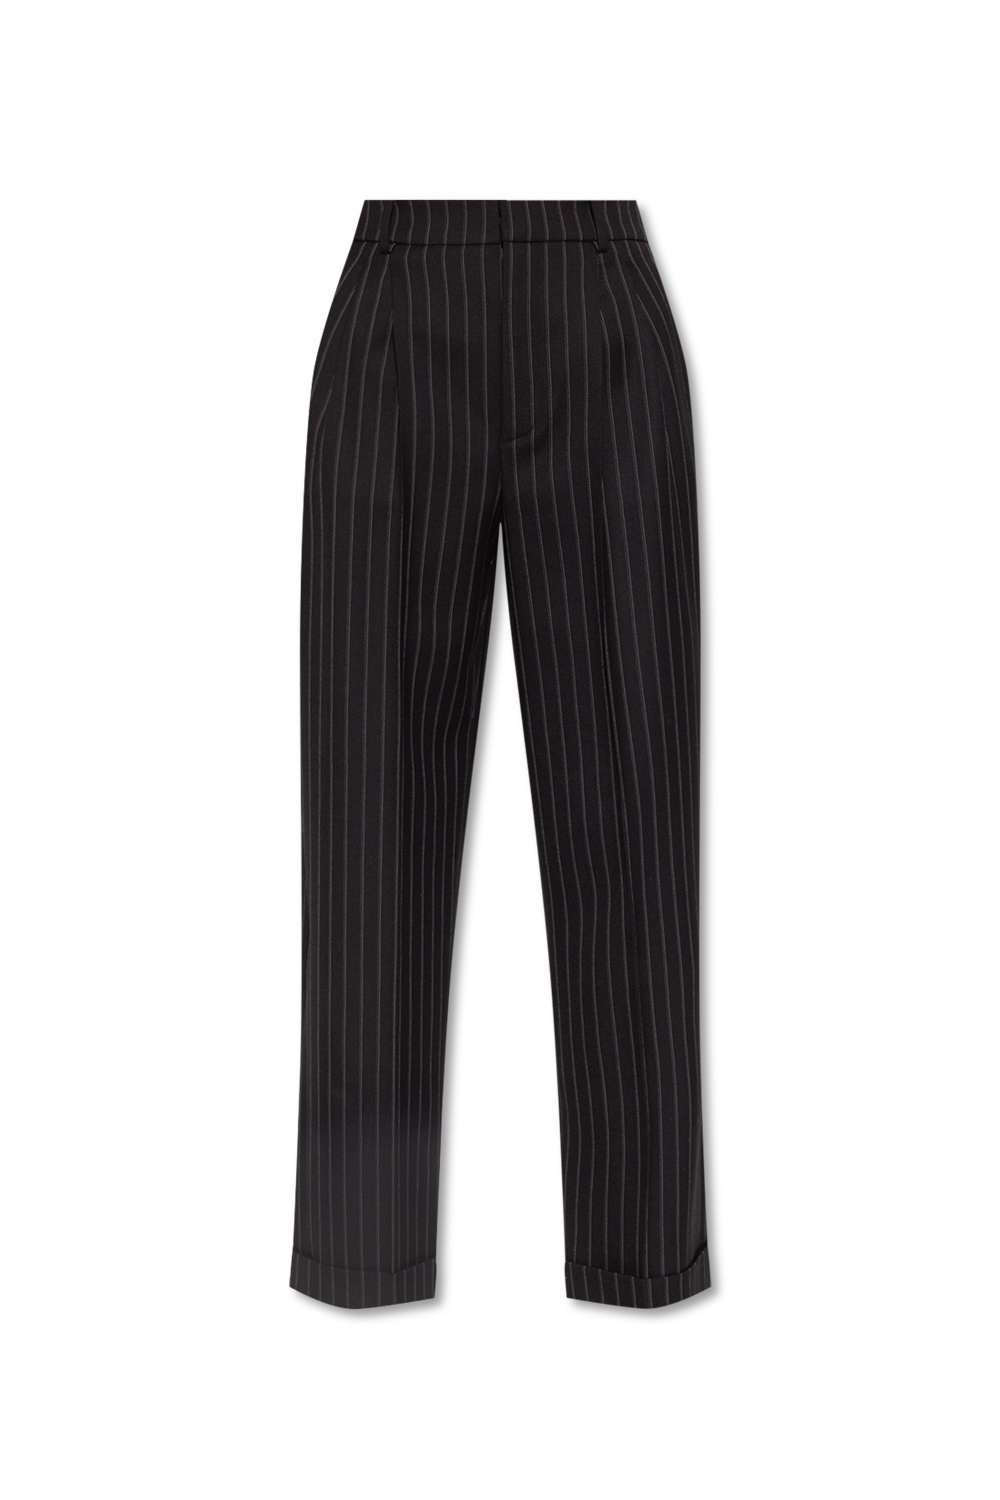 Black Pleat-front trousers Saint Laurent - Vitkac GB